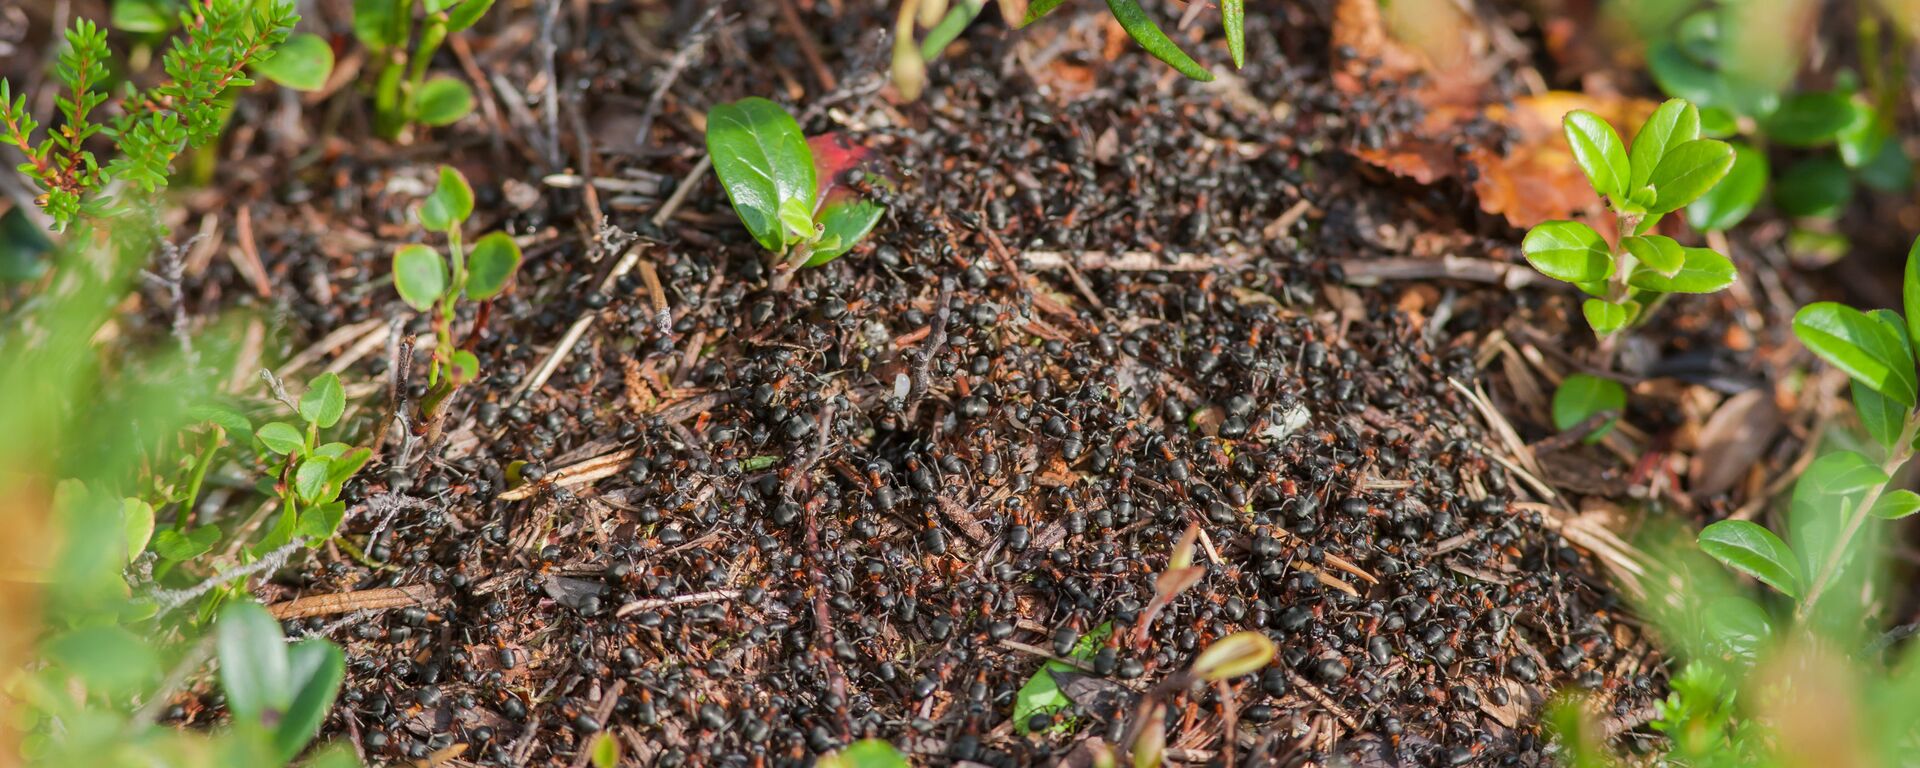 Ants in Vodlosersk Nature Park - Sputnik International, 1920, 05.11.2019